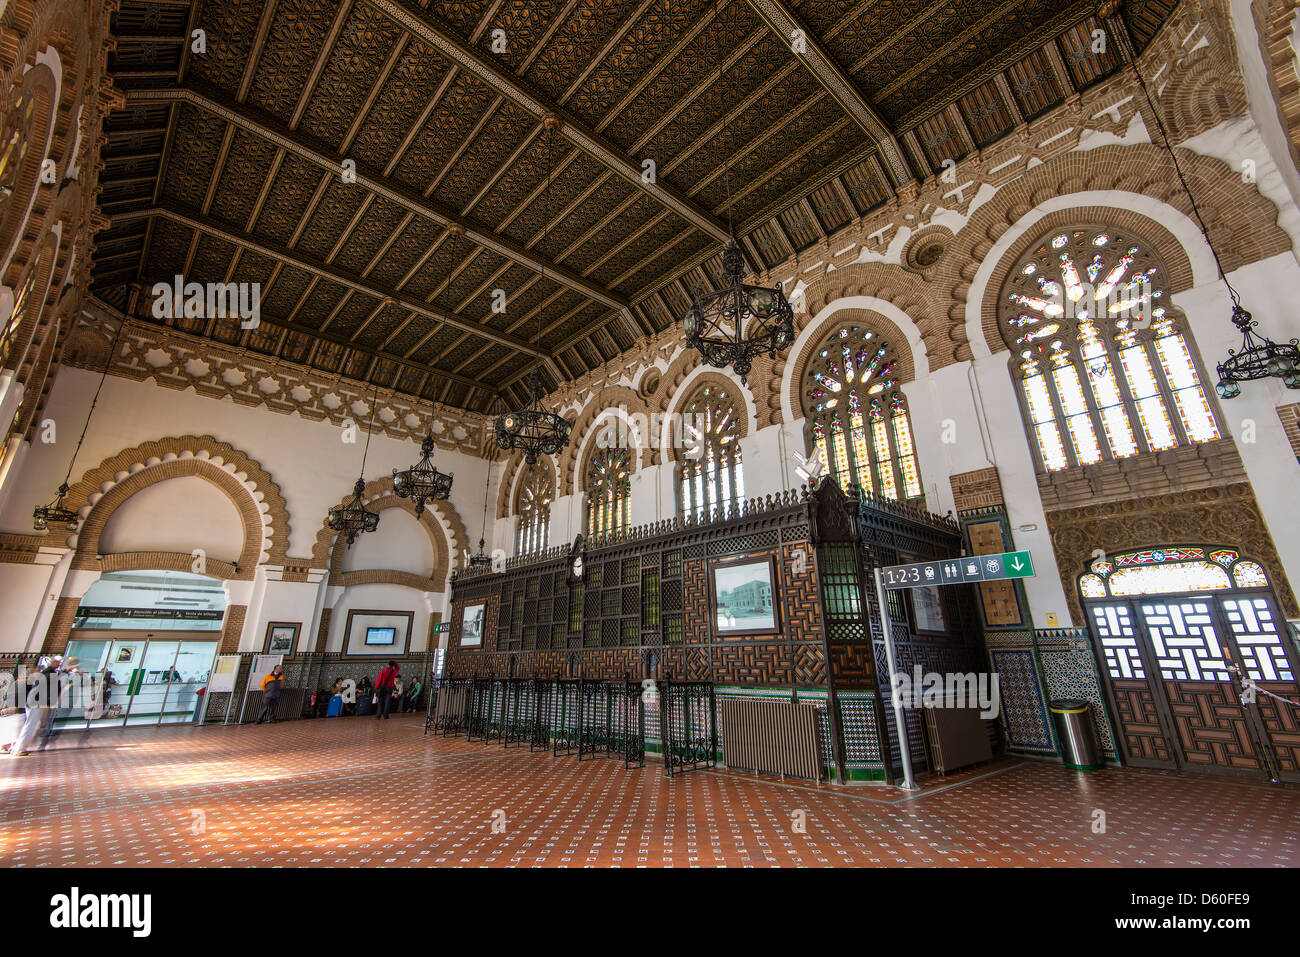 Interno della stazione ferroviaria in stile Neo-Mudéjar, Toledo, Castiglia La Mancha, in Spagna Foto Stock